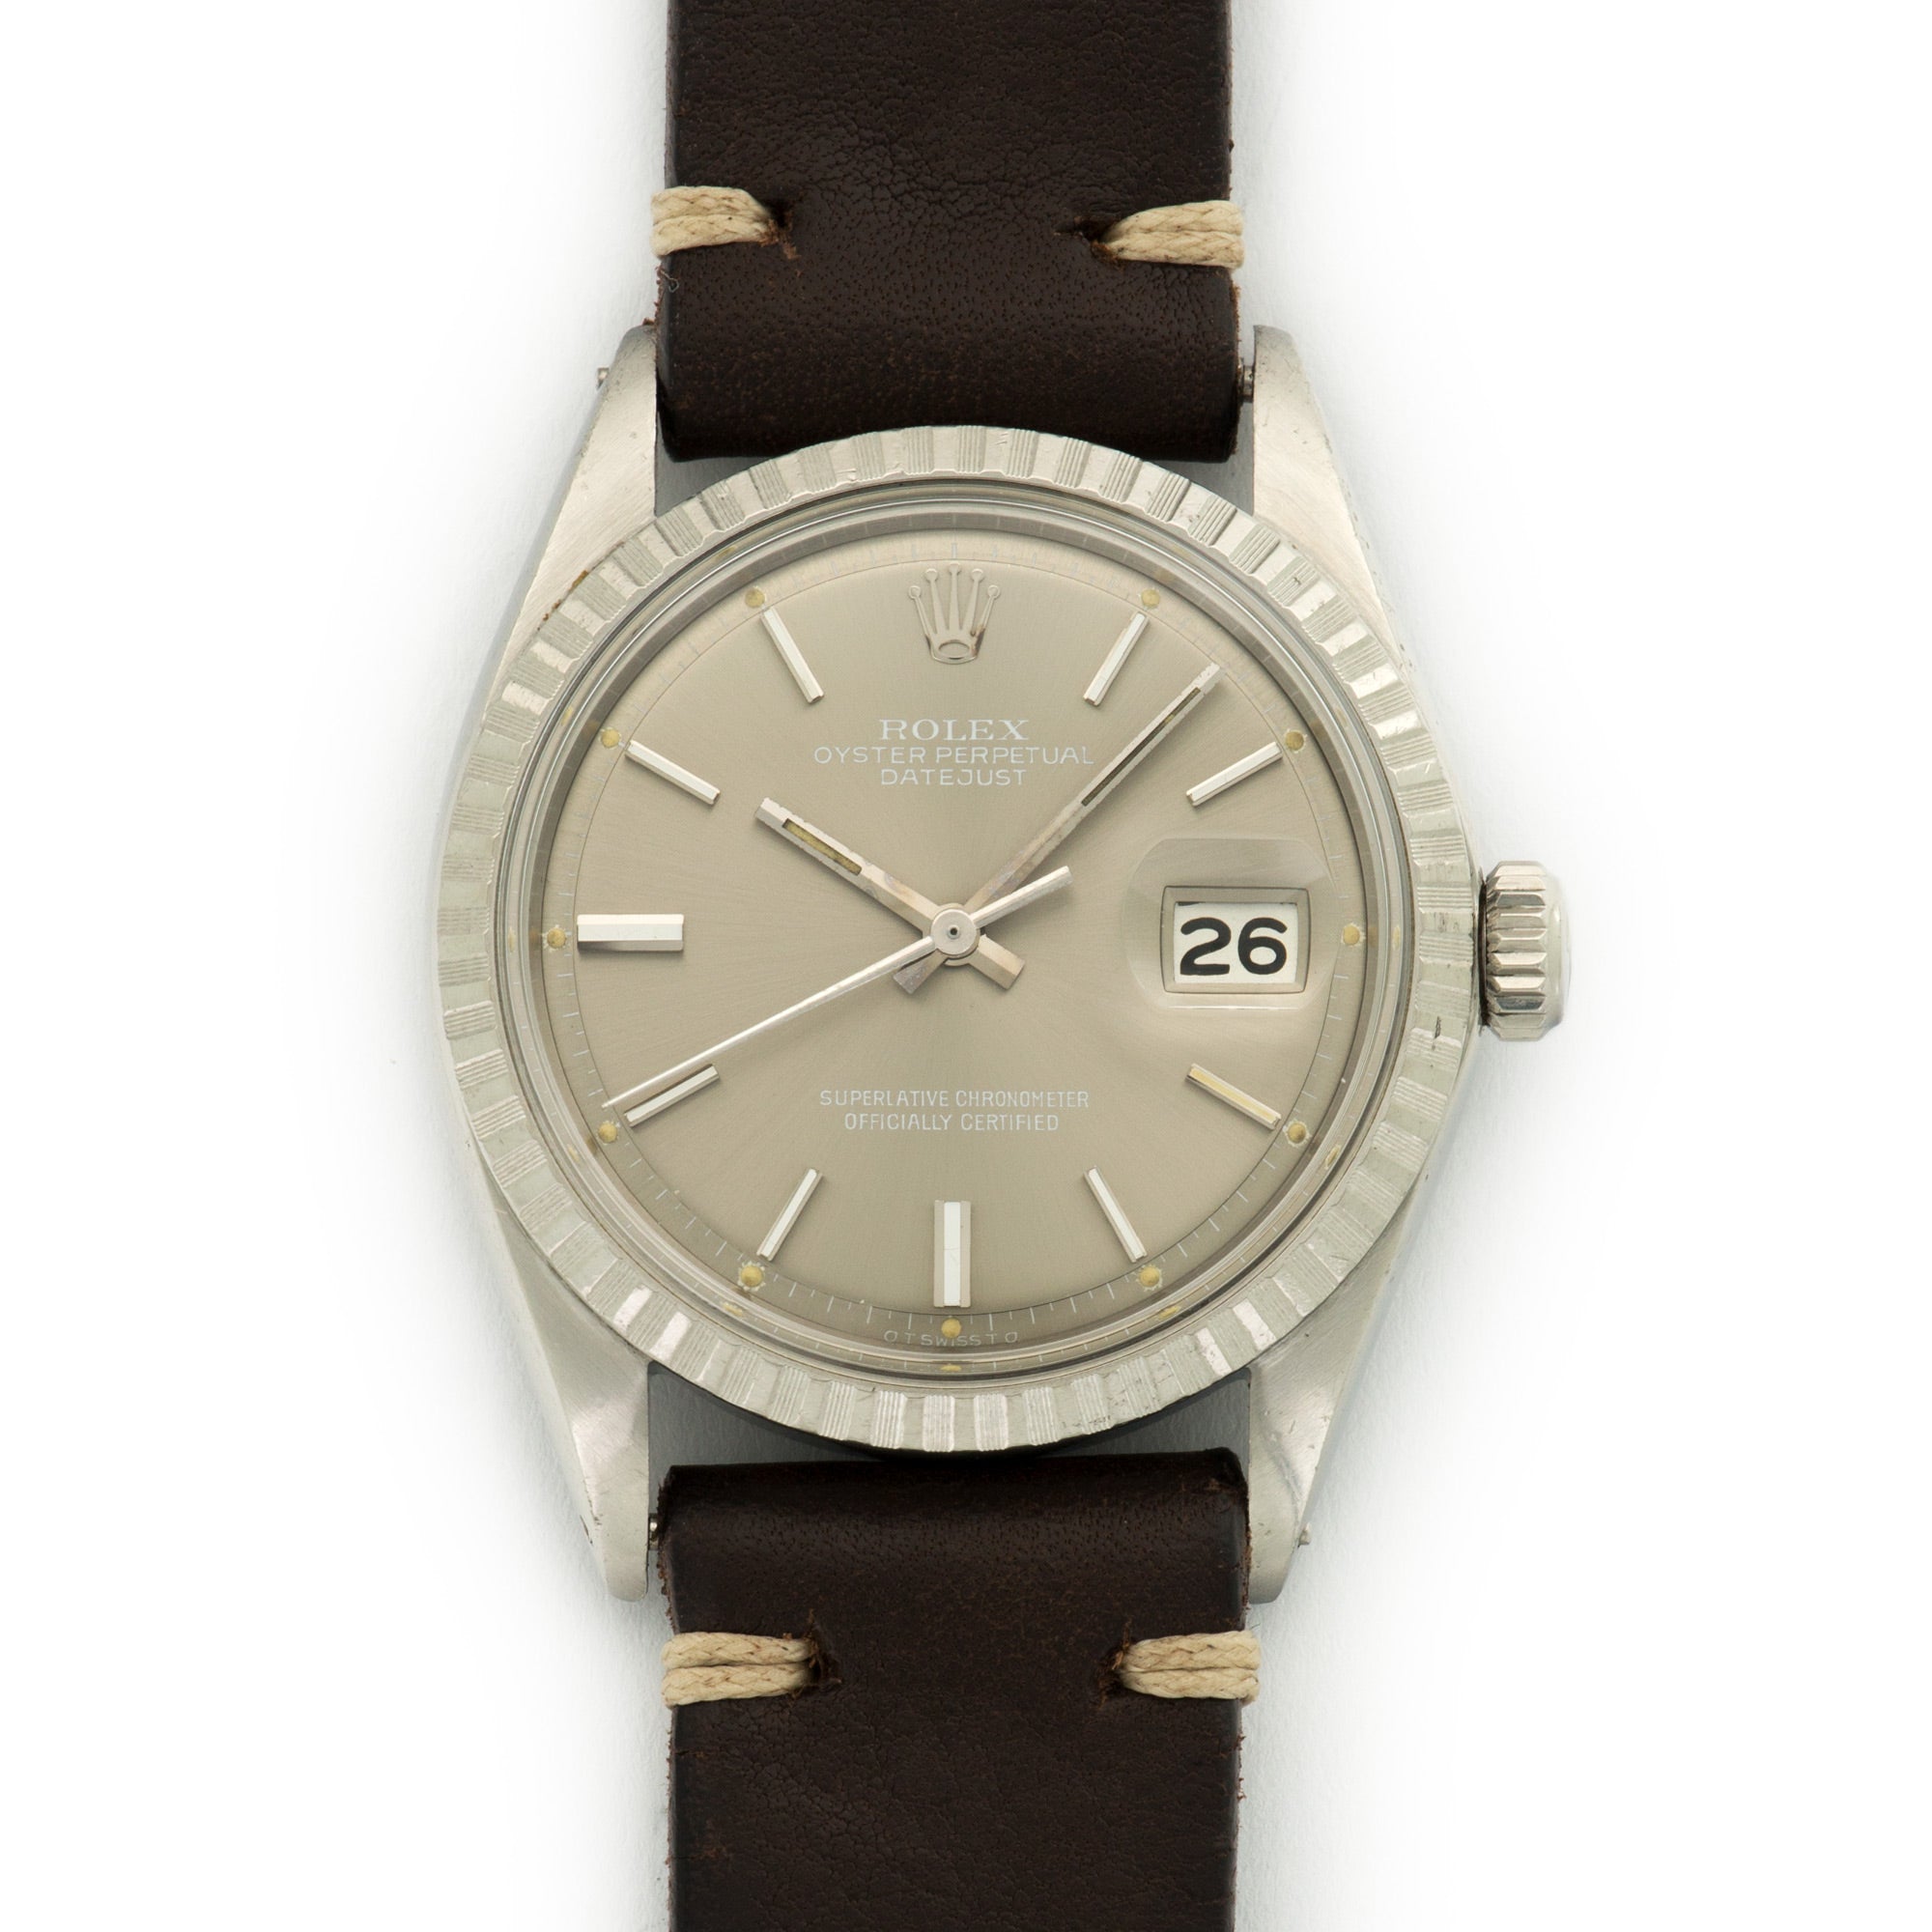 Rolex - Rolex Stainless Steel Datejust Watch Ref. 1603 - The Keystone Watches